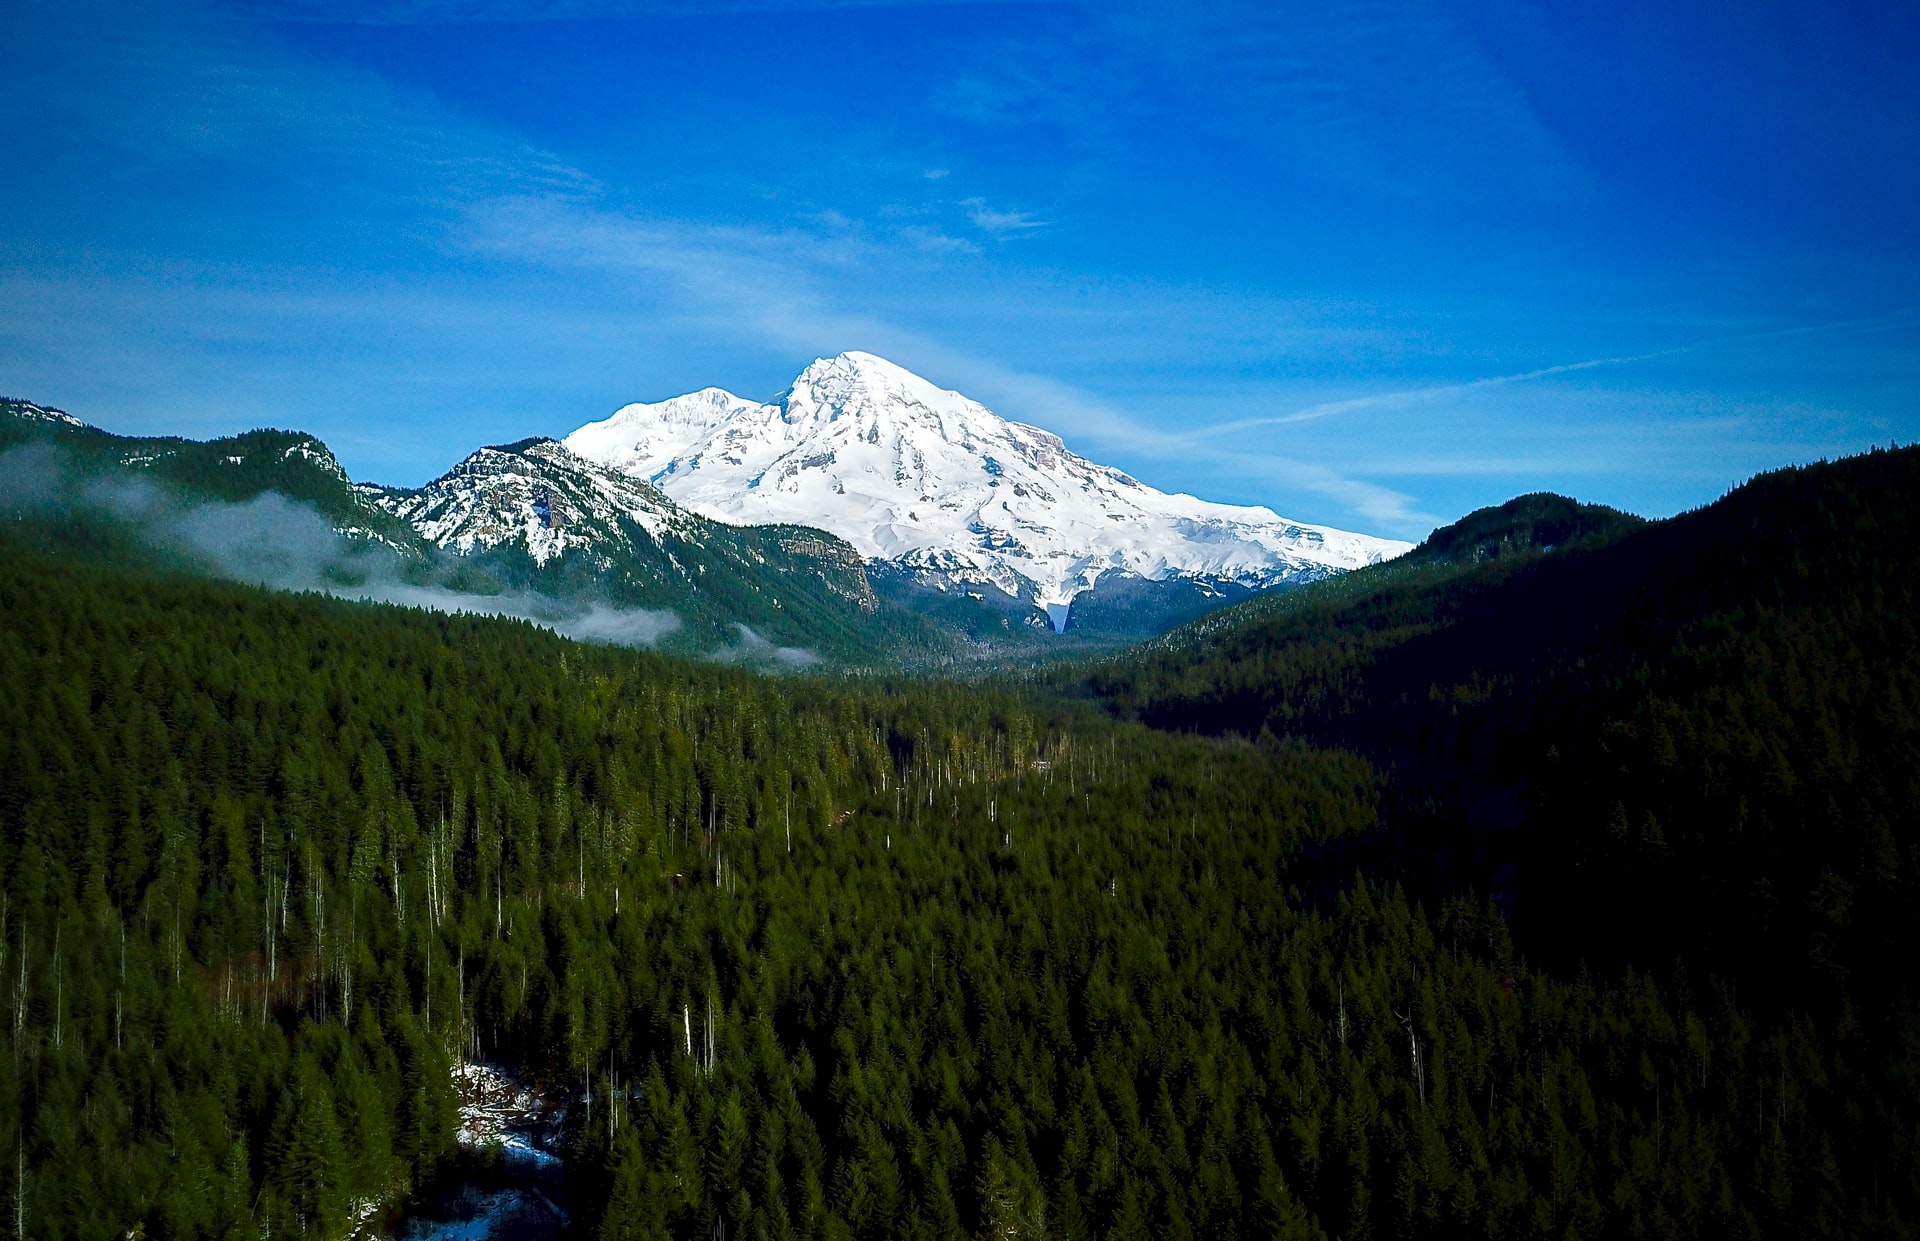 11. White River Campground, Mount Rainier - Washington